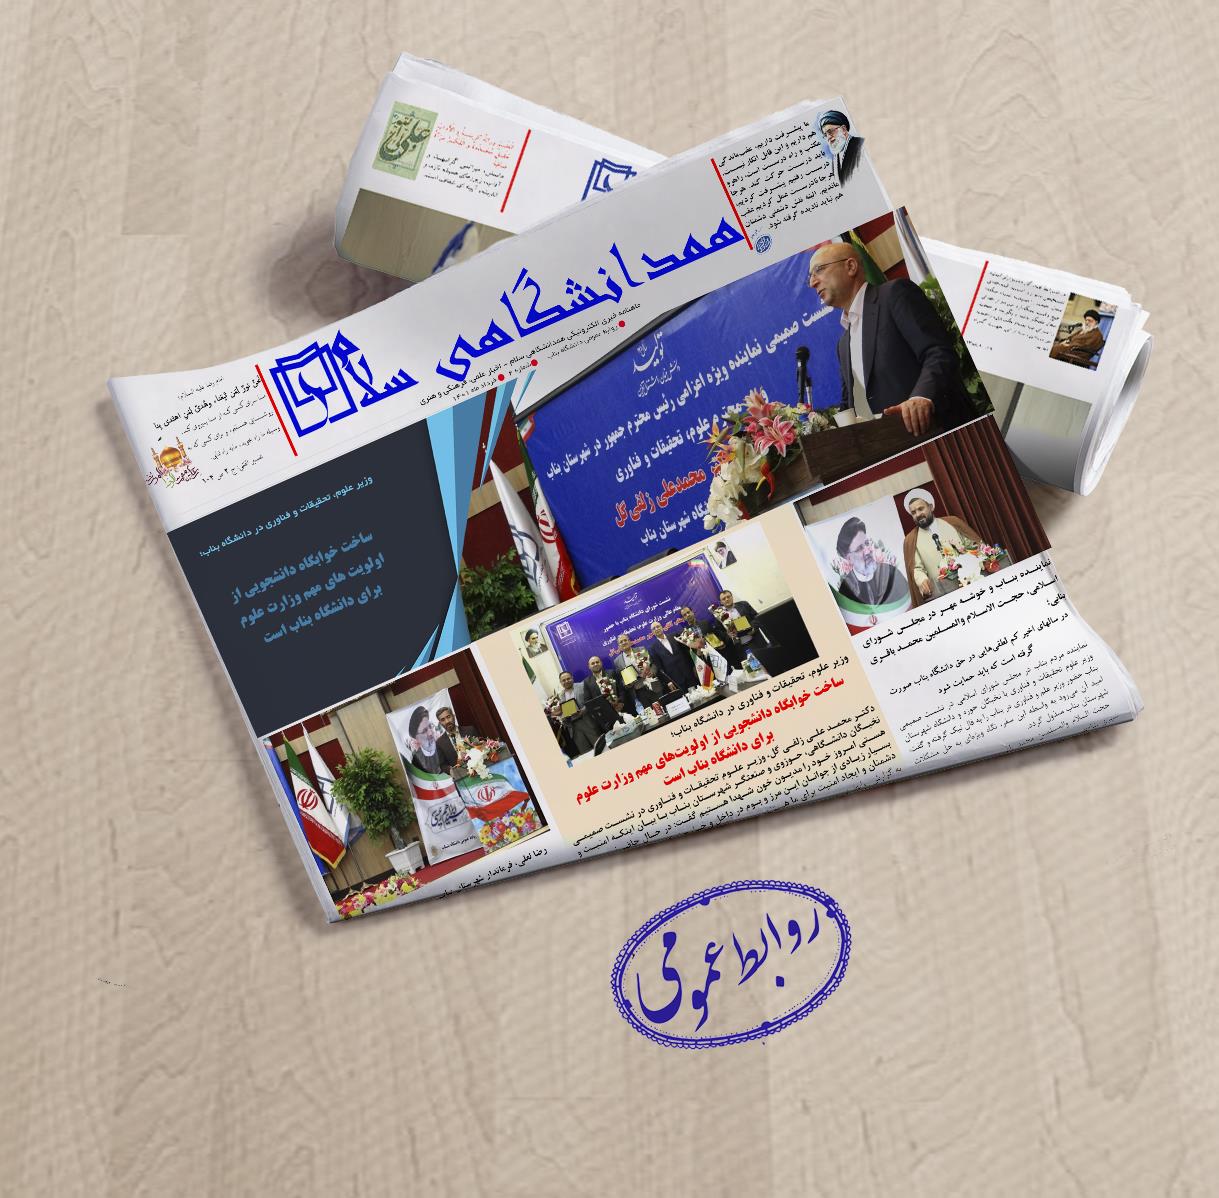 دومین شماره ماهنامه الکترونیکی همدانشگاهی سلام منتشر شد